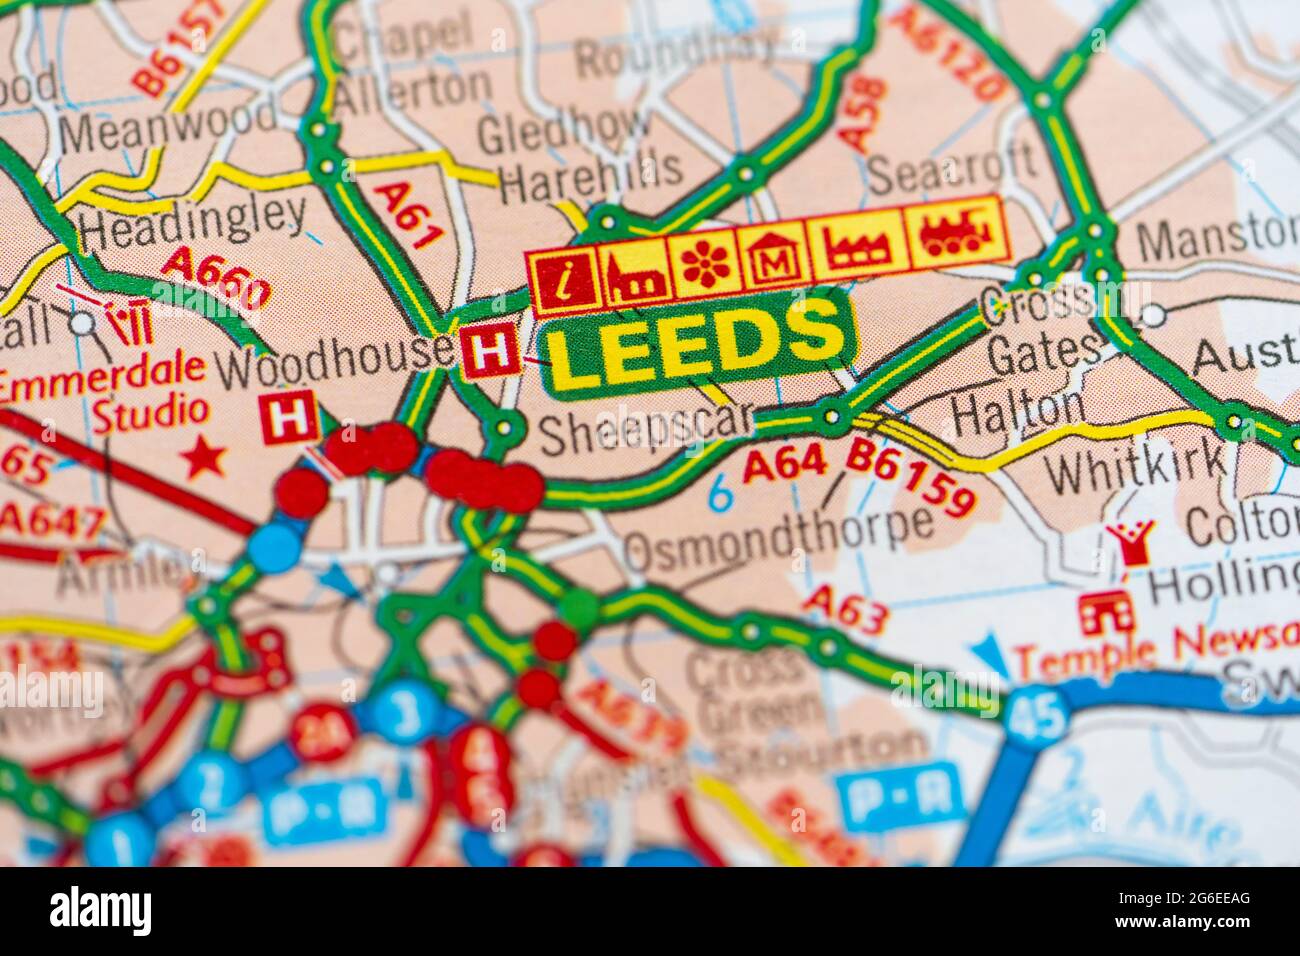 Eine Makroansicht einer Seite in einem gedruckten Straßenkarte-Atlas mit der Stadt Leeds, England Stockfoto